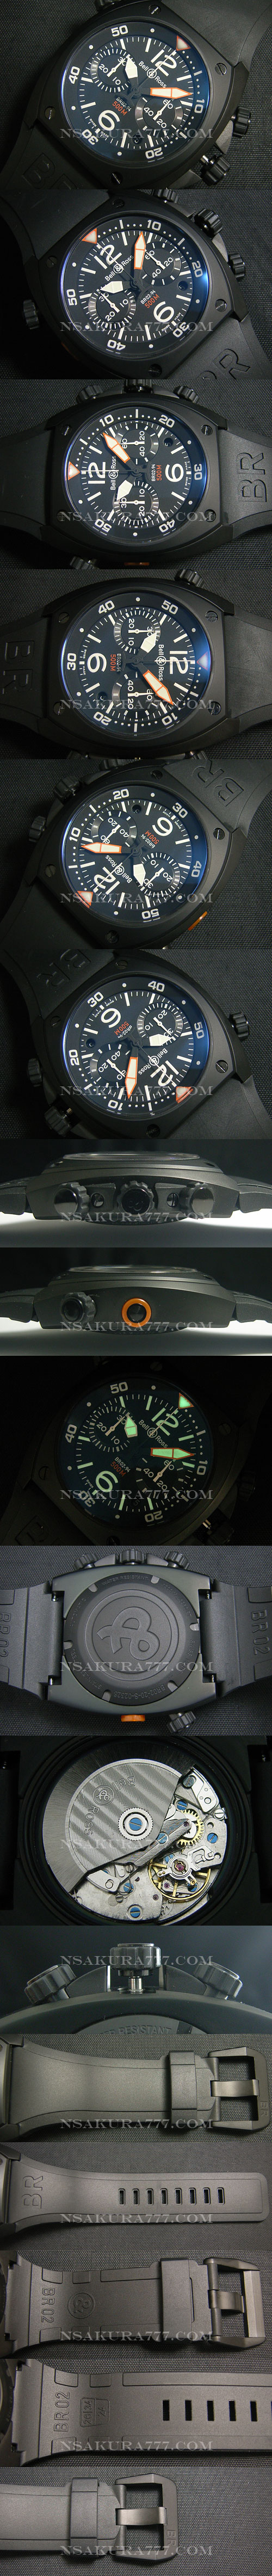 レプリカ時計ベル&ロス BR02-94 クロノグラフ Asian 7750搭載 28800振動 オートマティック - ウインドウを閉じる